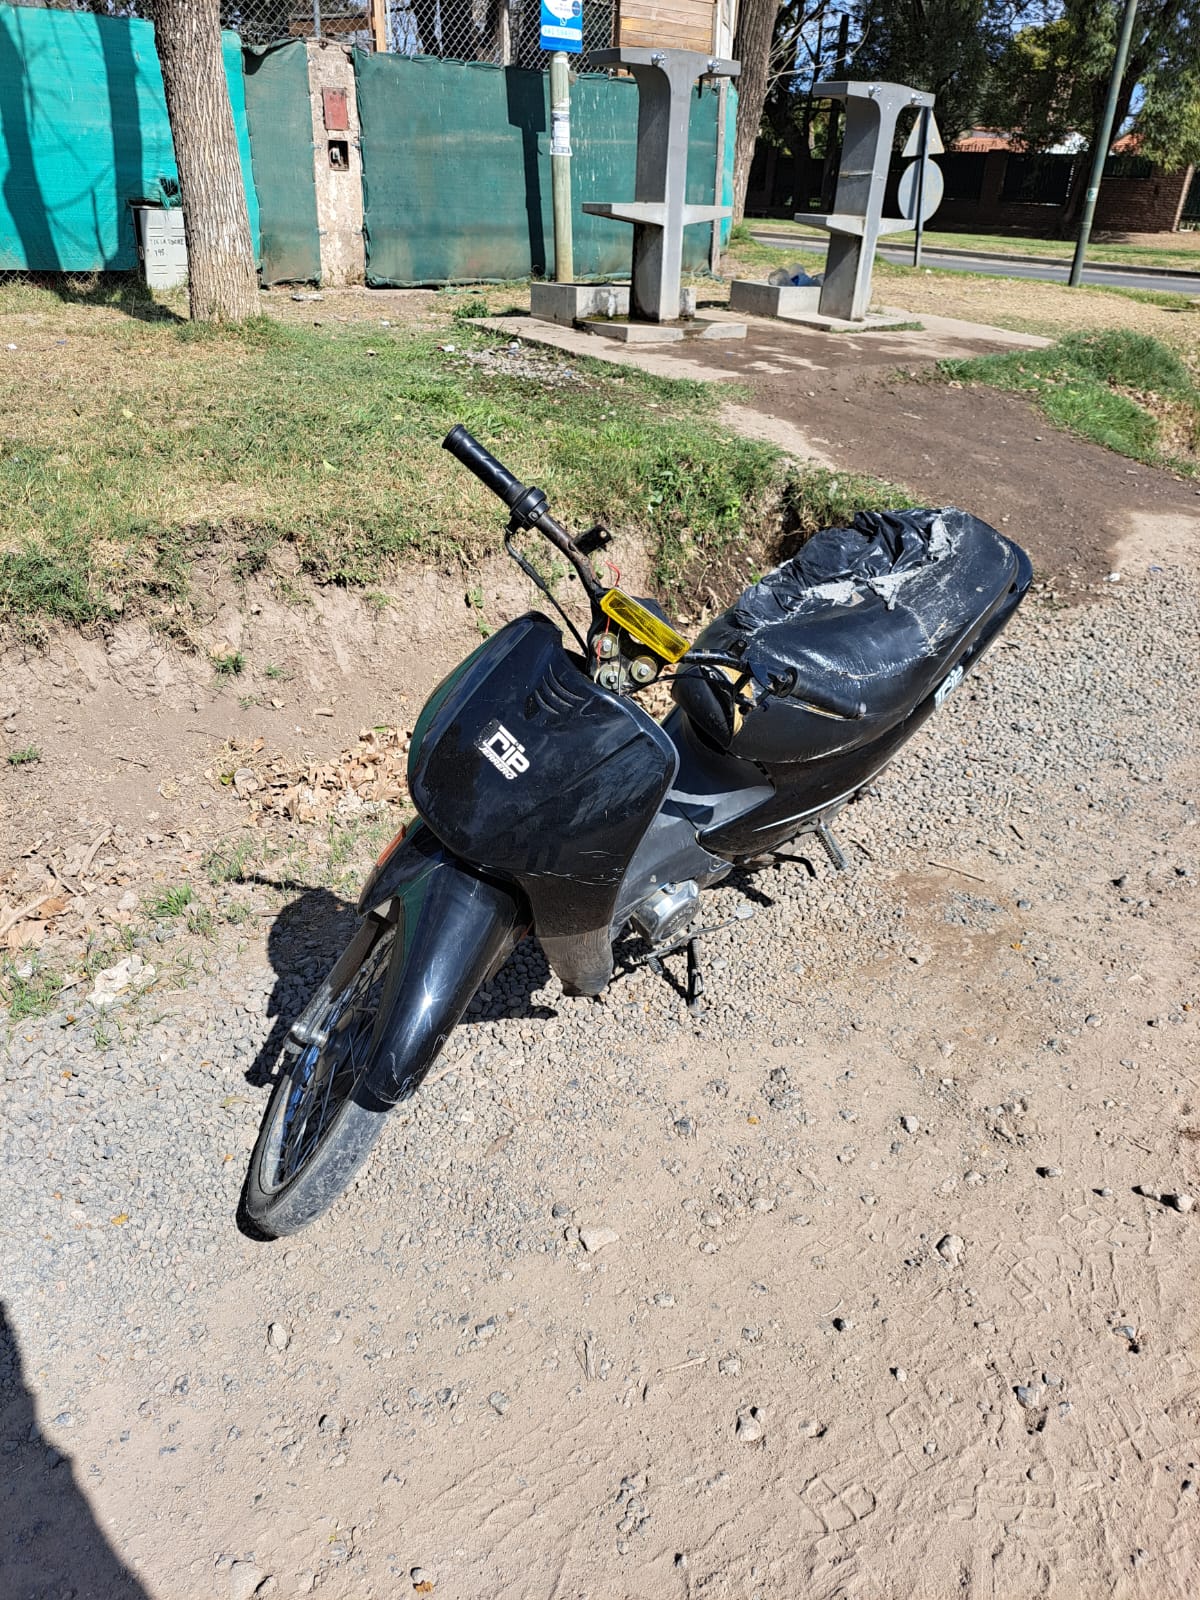 Robada y encontrada: recuperan moto con pedido de captura por robo calificado 